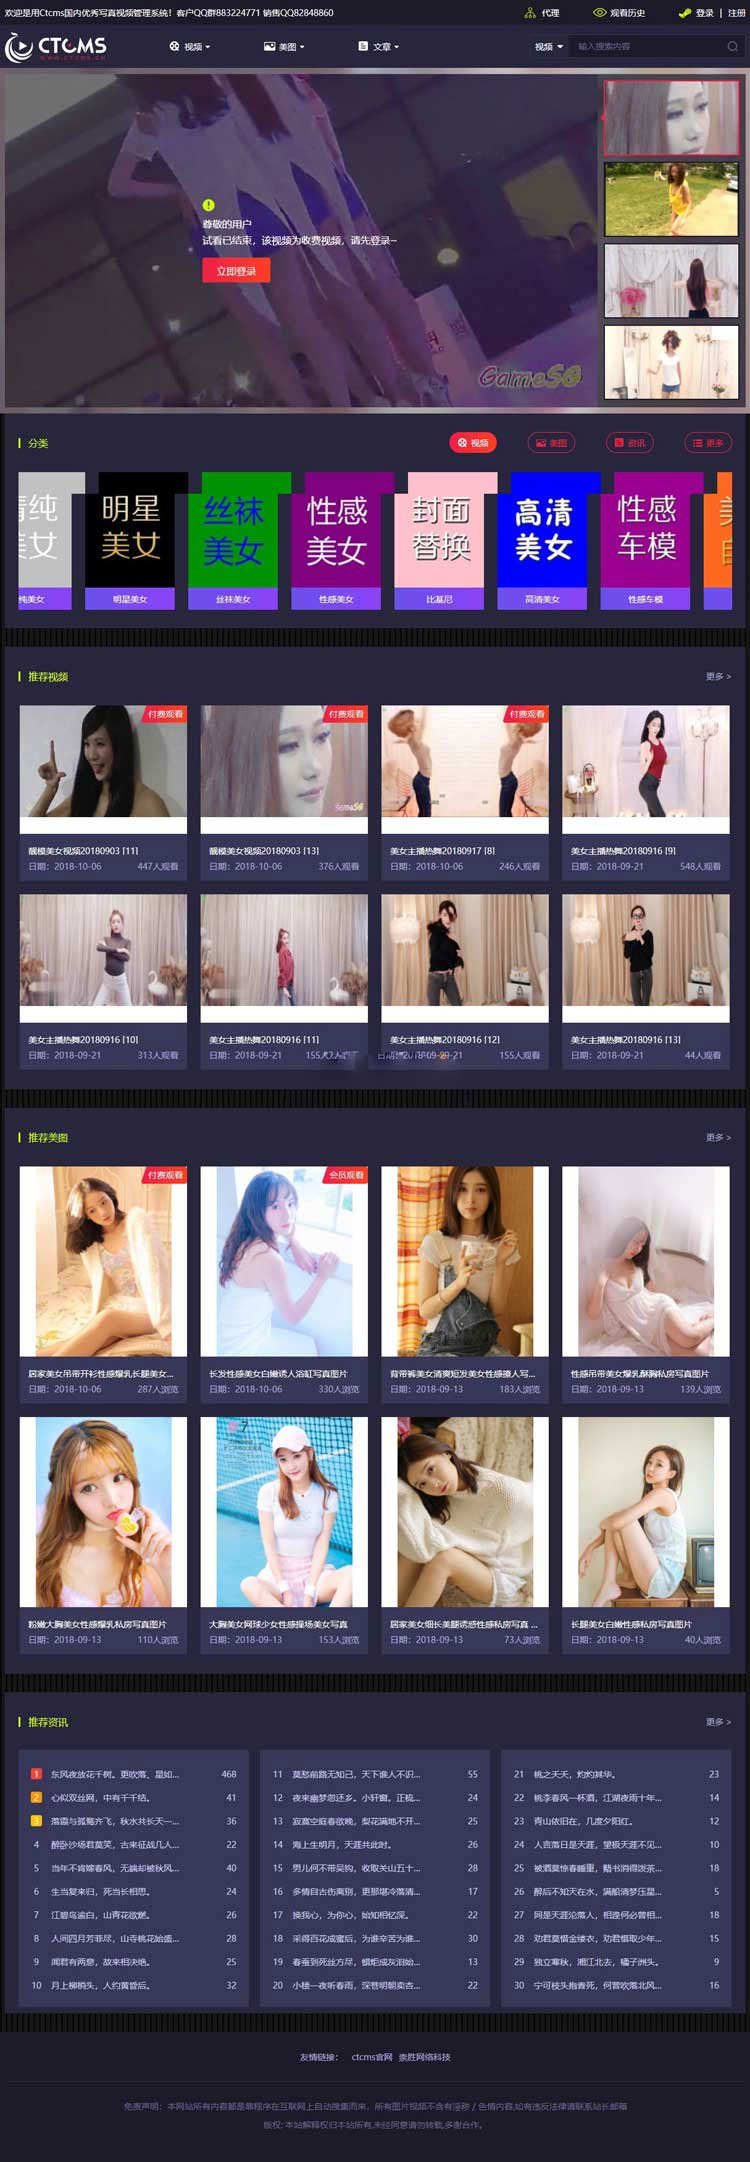 美女写真图片网站源码 美女模特视频网站源码 带会员VIP系统+一键采集+代理系统OD1029